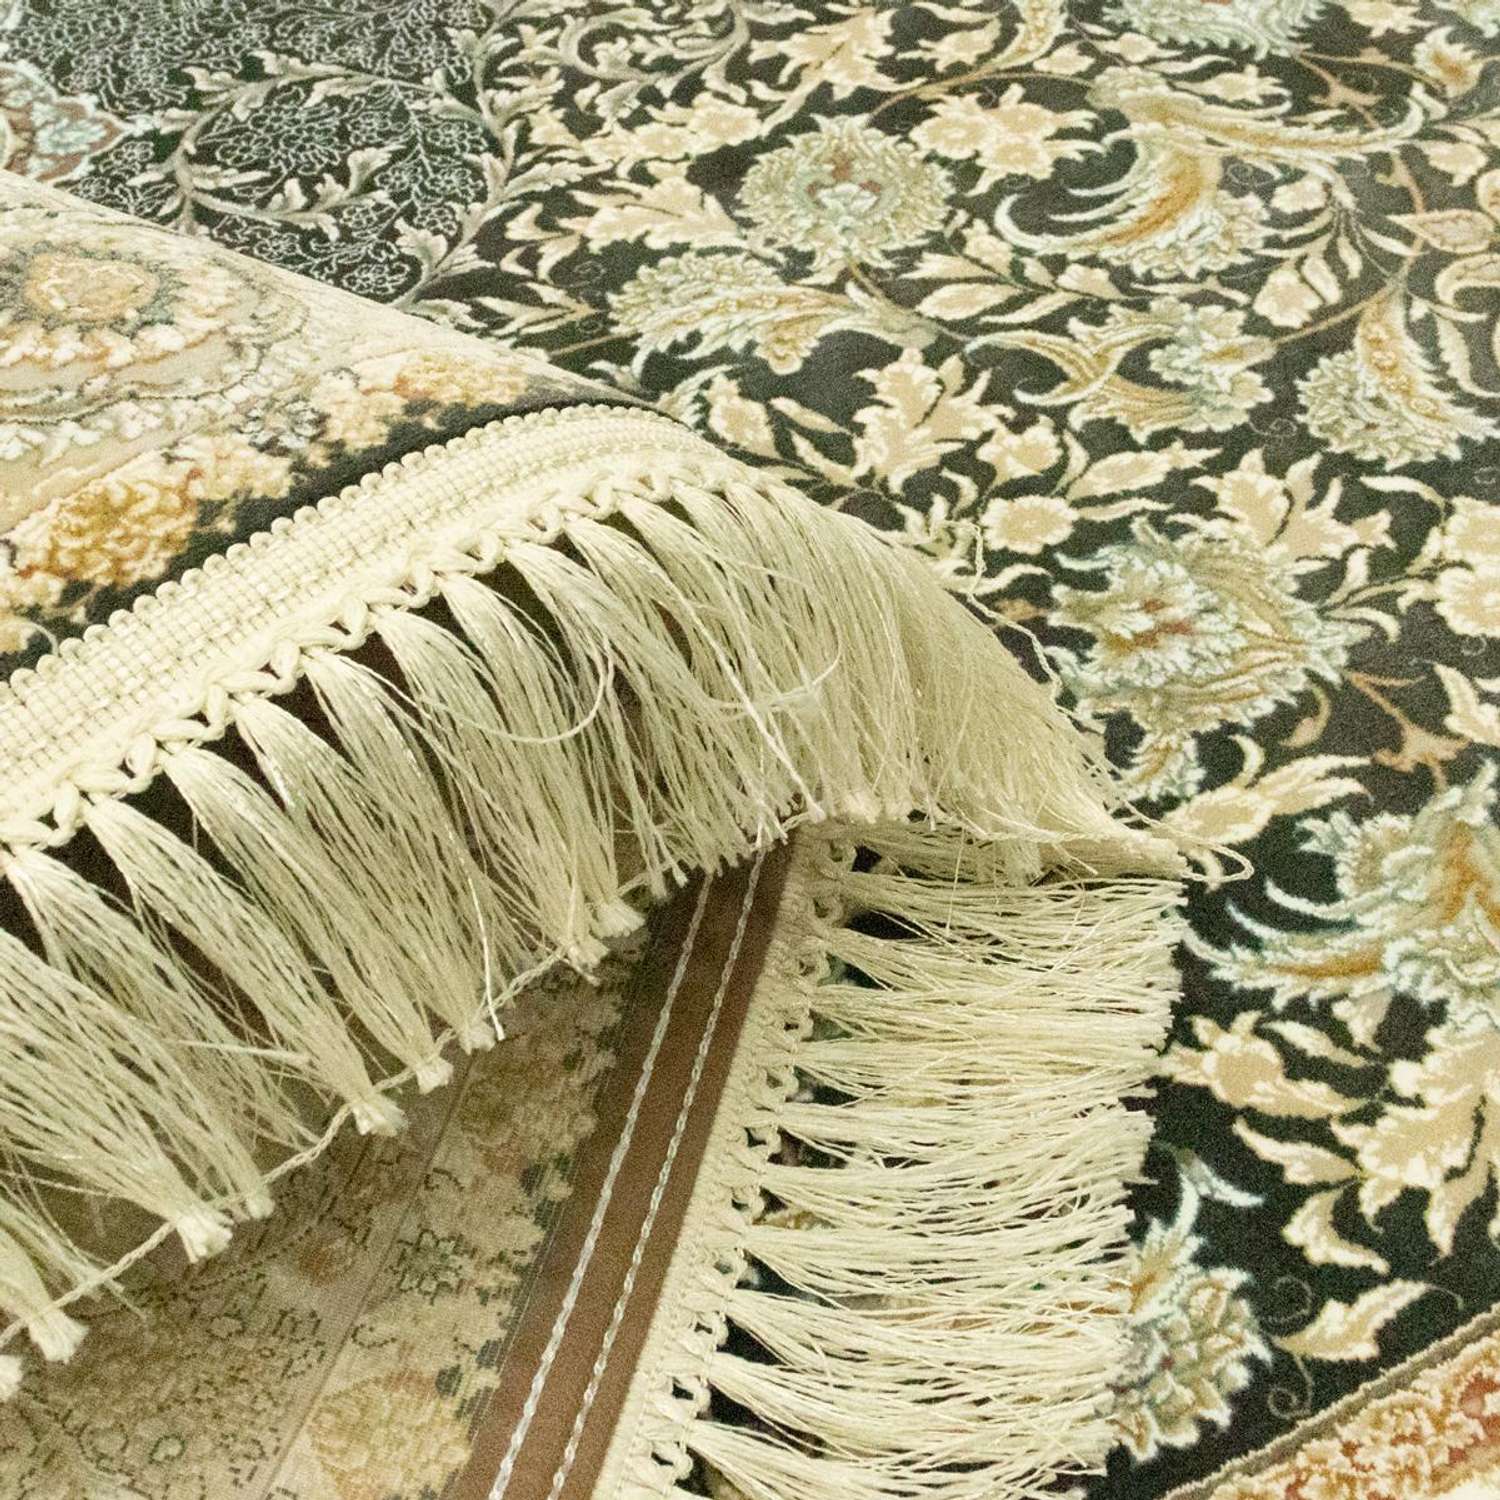 Orientalsk teppe - Benafscha - oval